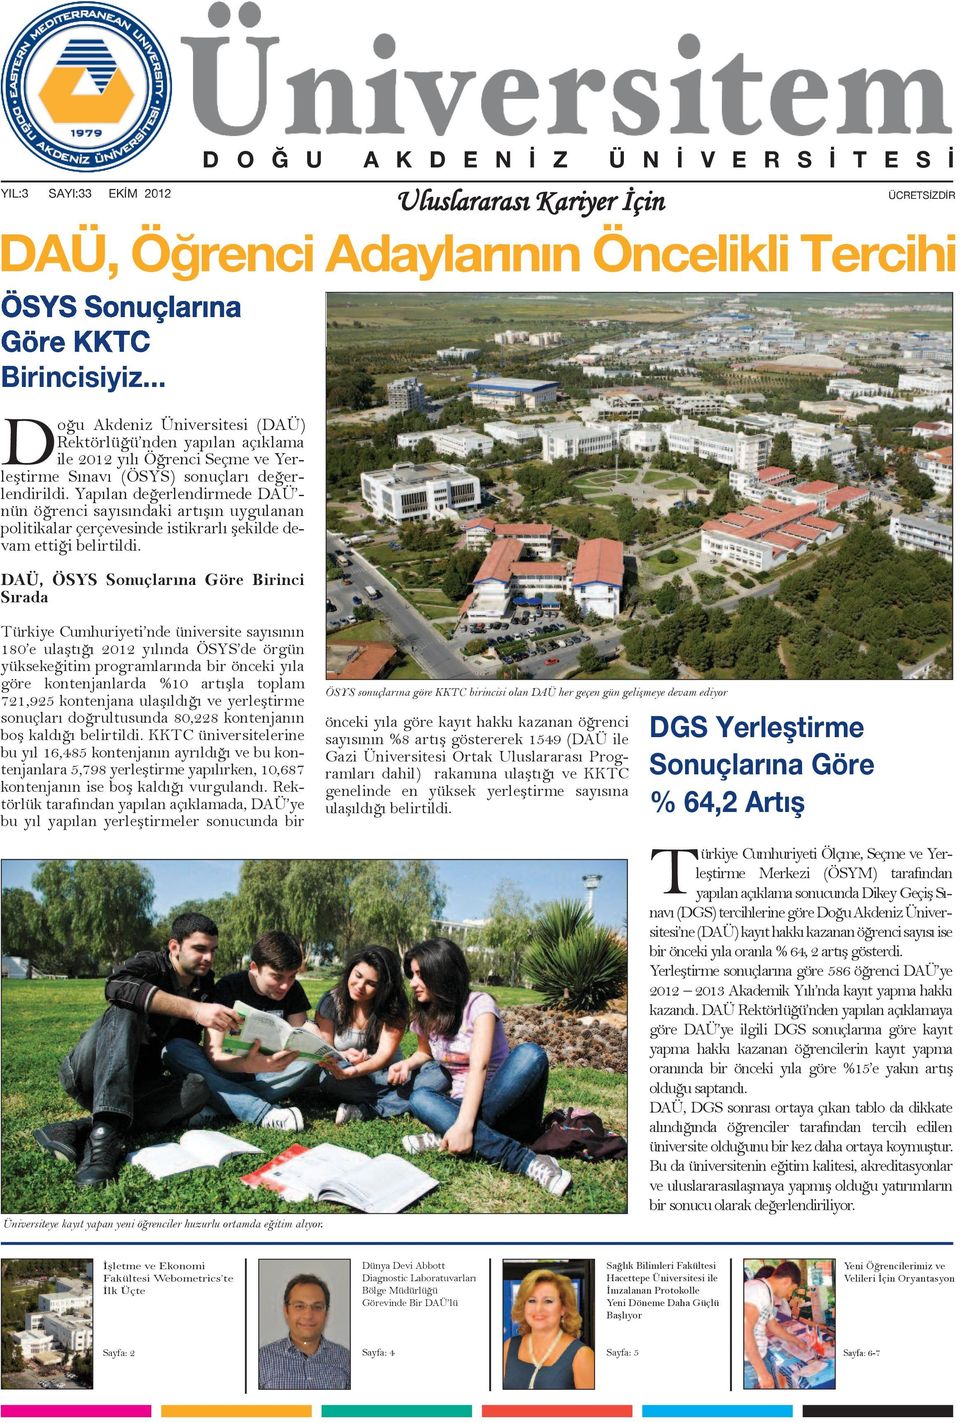 DAÜ, ÖSYS Sonuçlarına Göre Birinci Sırada ÜCRETSİZDİR DAÜ, Öğrenci Adaylarının Öncelikli Tercihi Türkiye Cumhuriyeti nde üniversite sayısının 180 e ulaştığı 2012 yılında ÖSYS de örgün yüksekeğitim